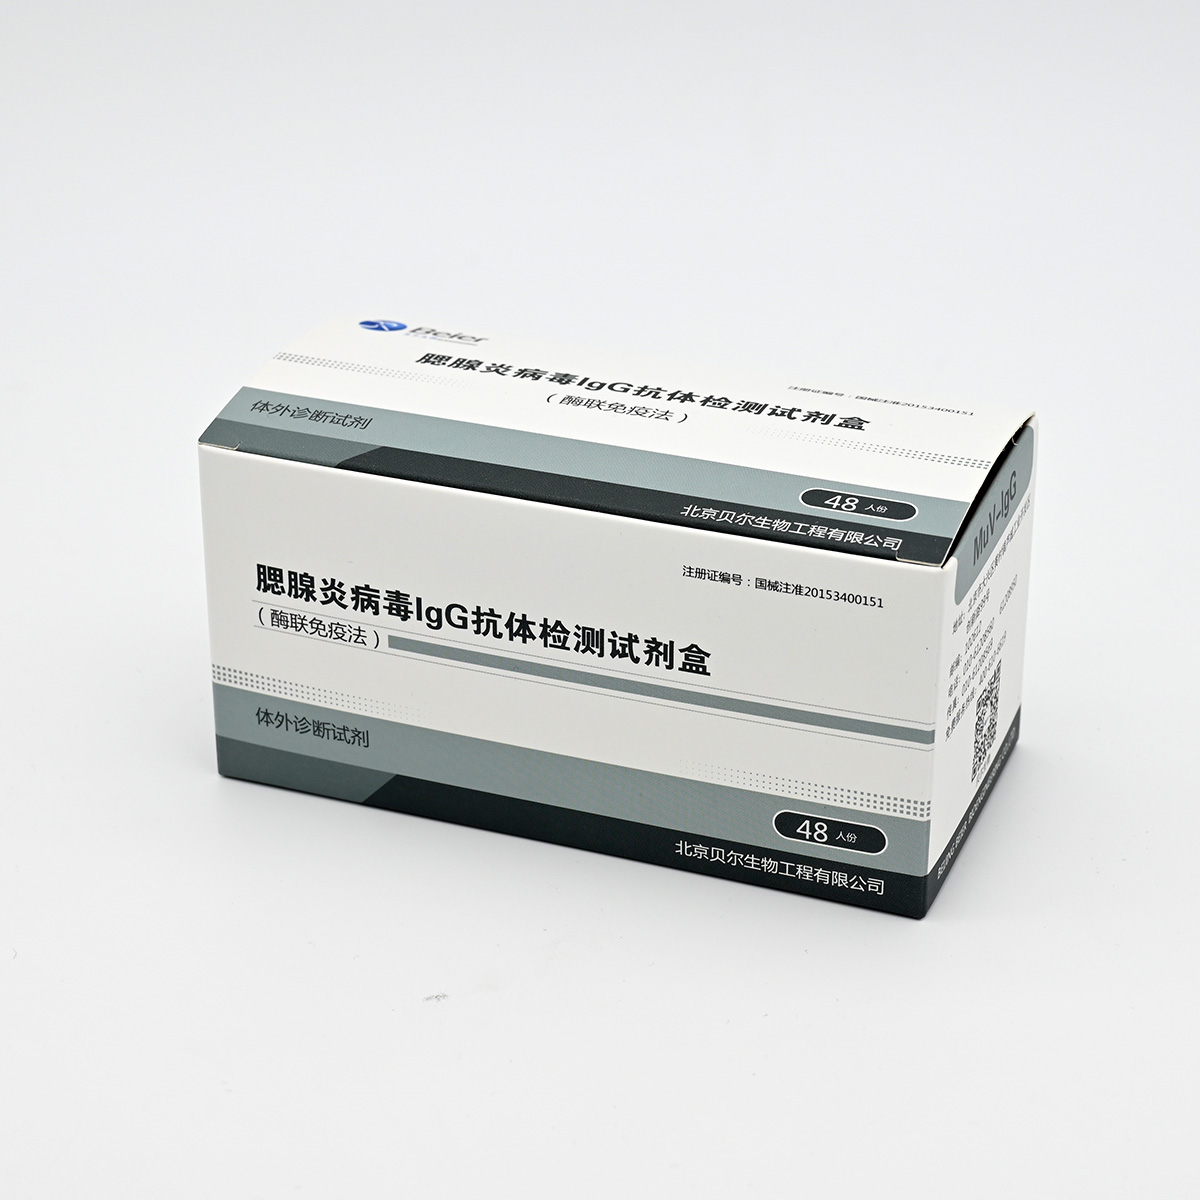 【贝尔】腮腺炎病毒IgG抗体检测试剂盒(酶联免疫法)